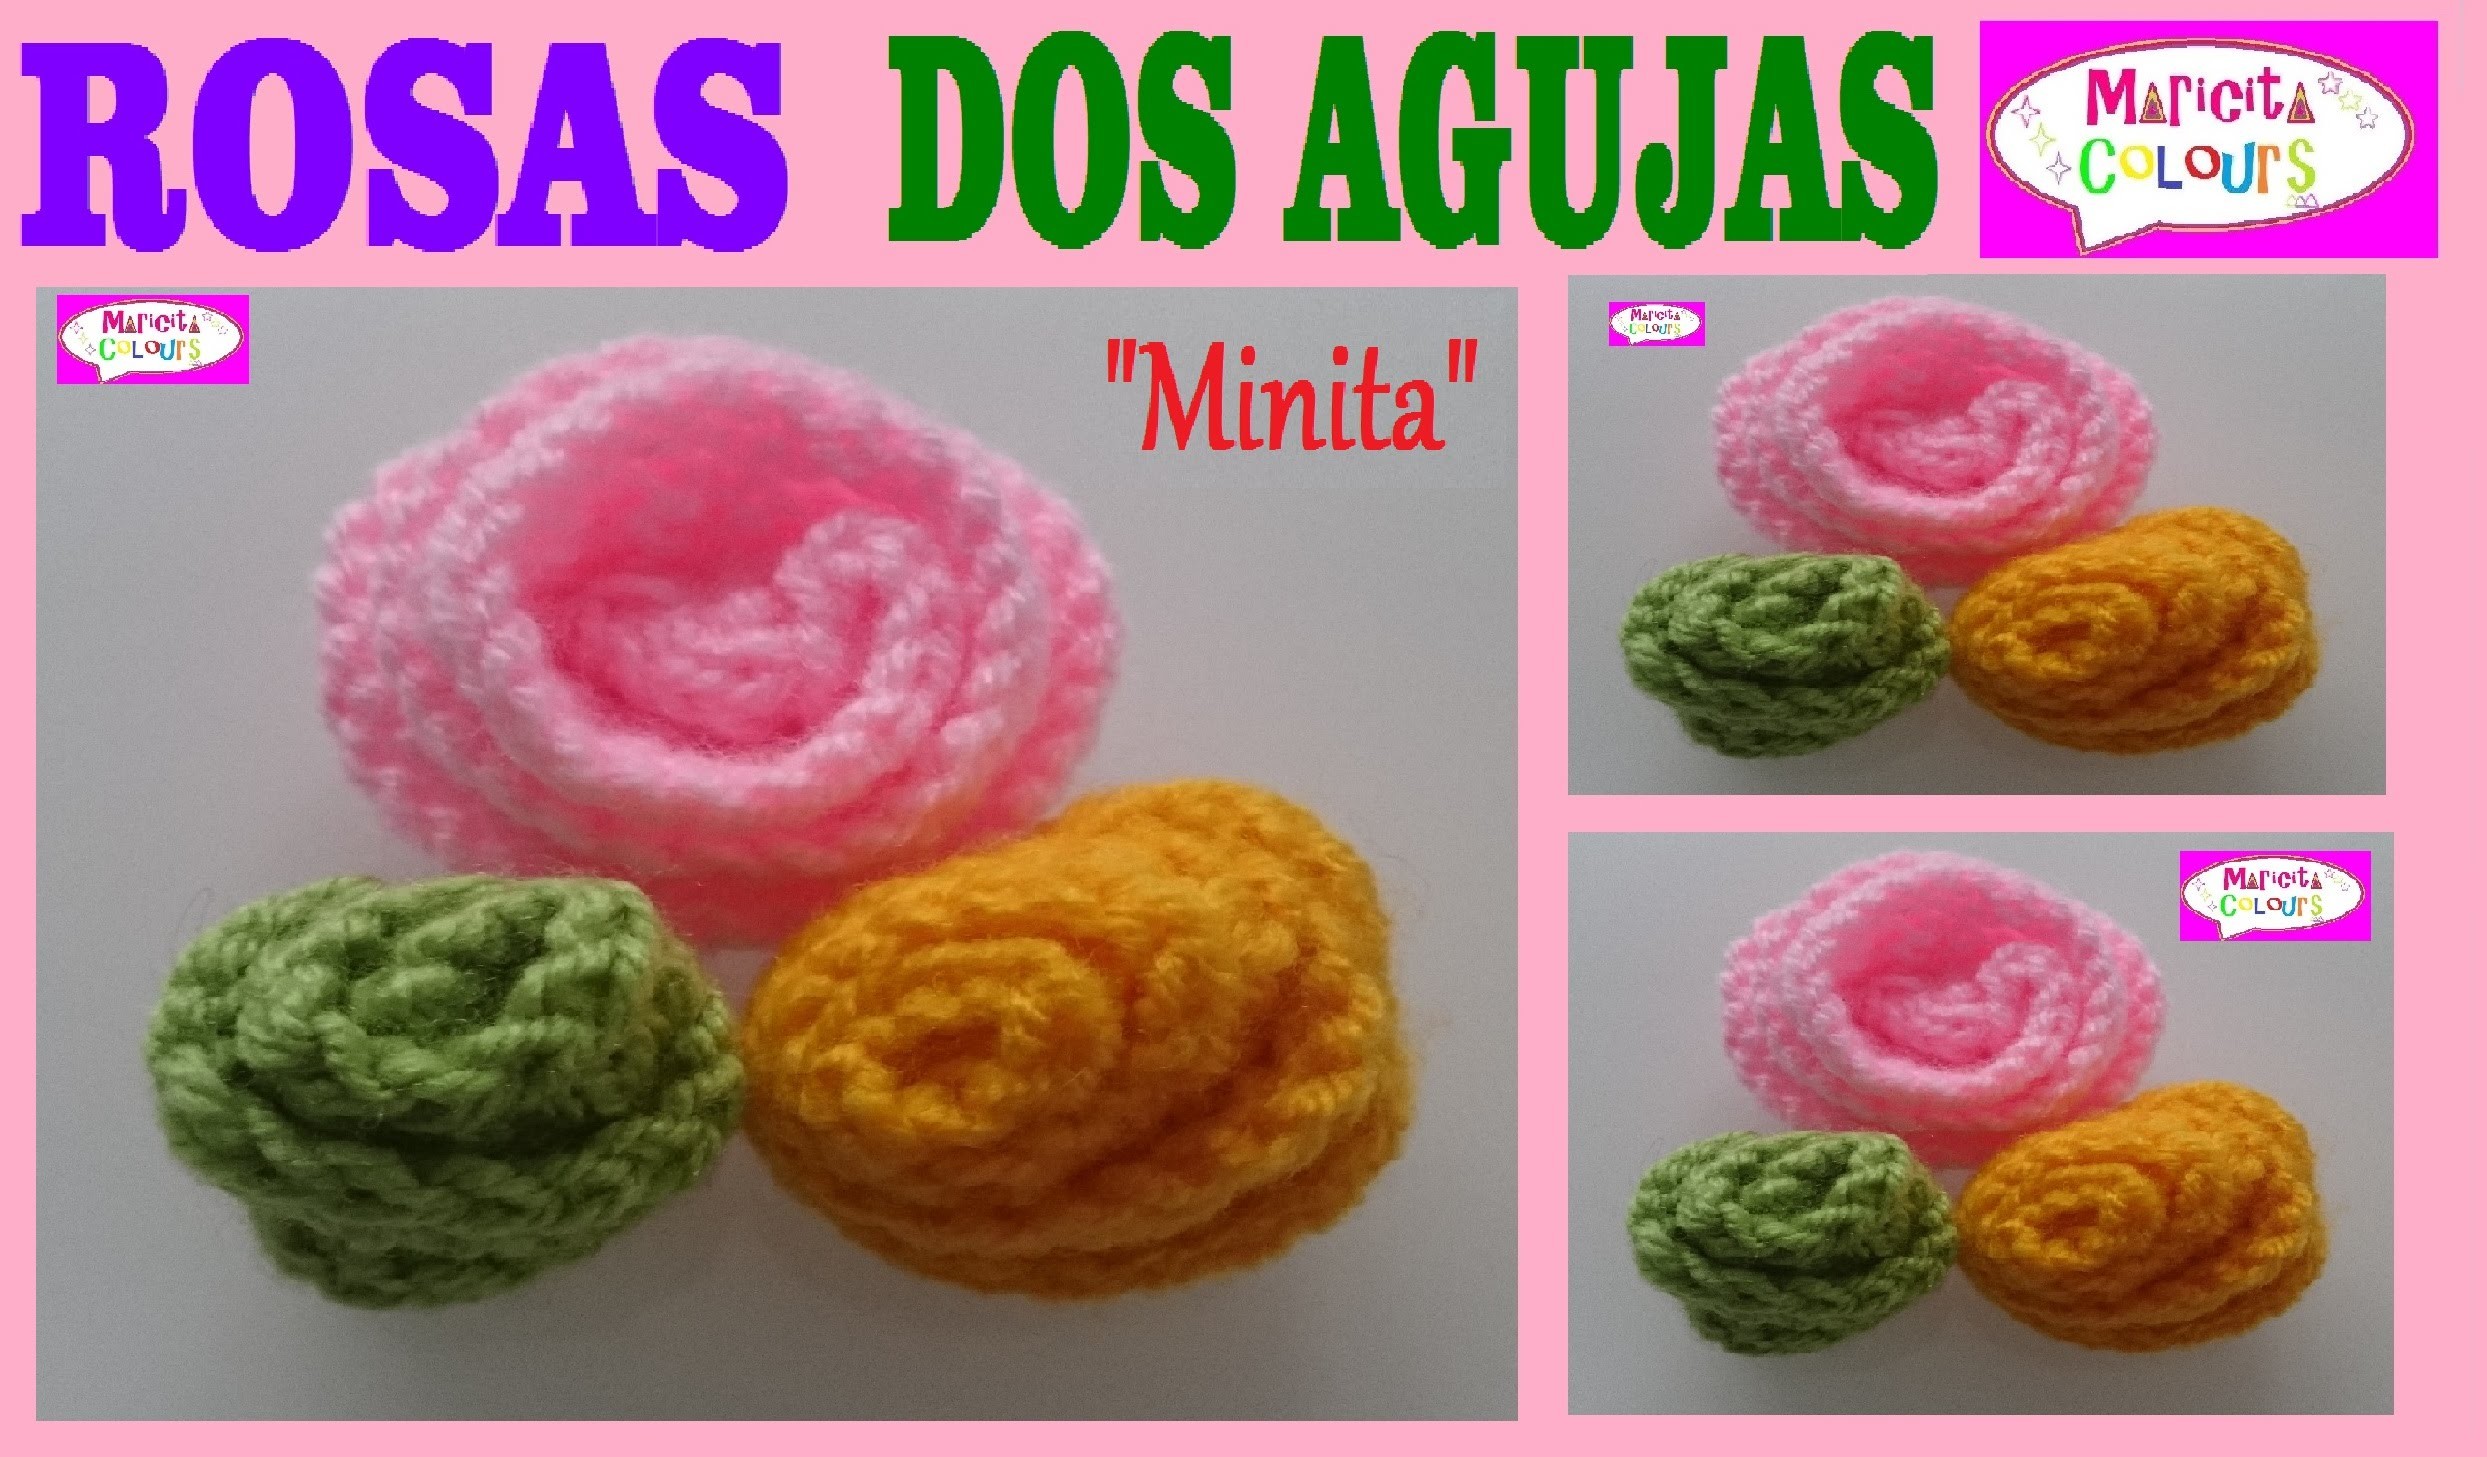 Rosa, Flor Botón a DosAgujas "Minita" Aplicación por Maricita Colours